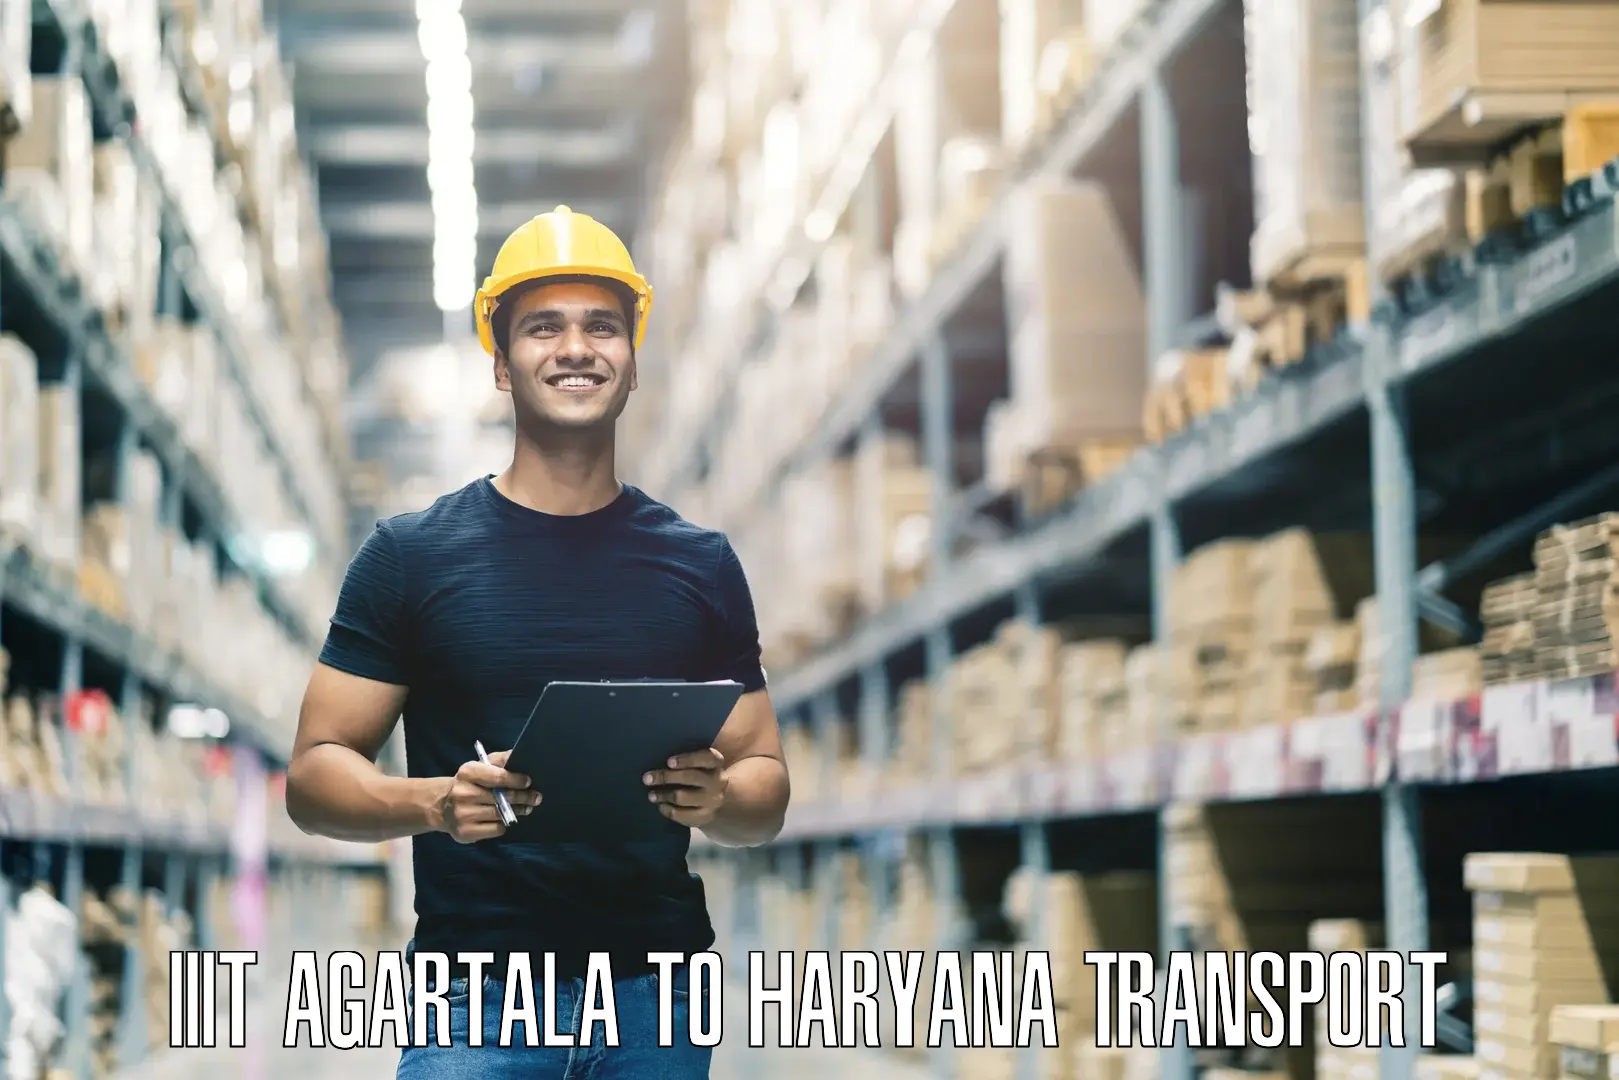 Material transport services in IIIT Agartala to Kurukshetra